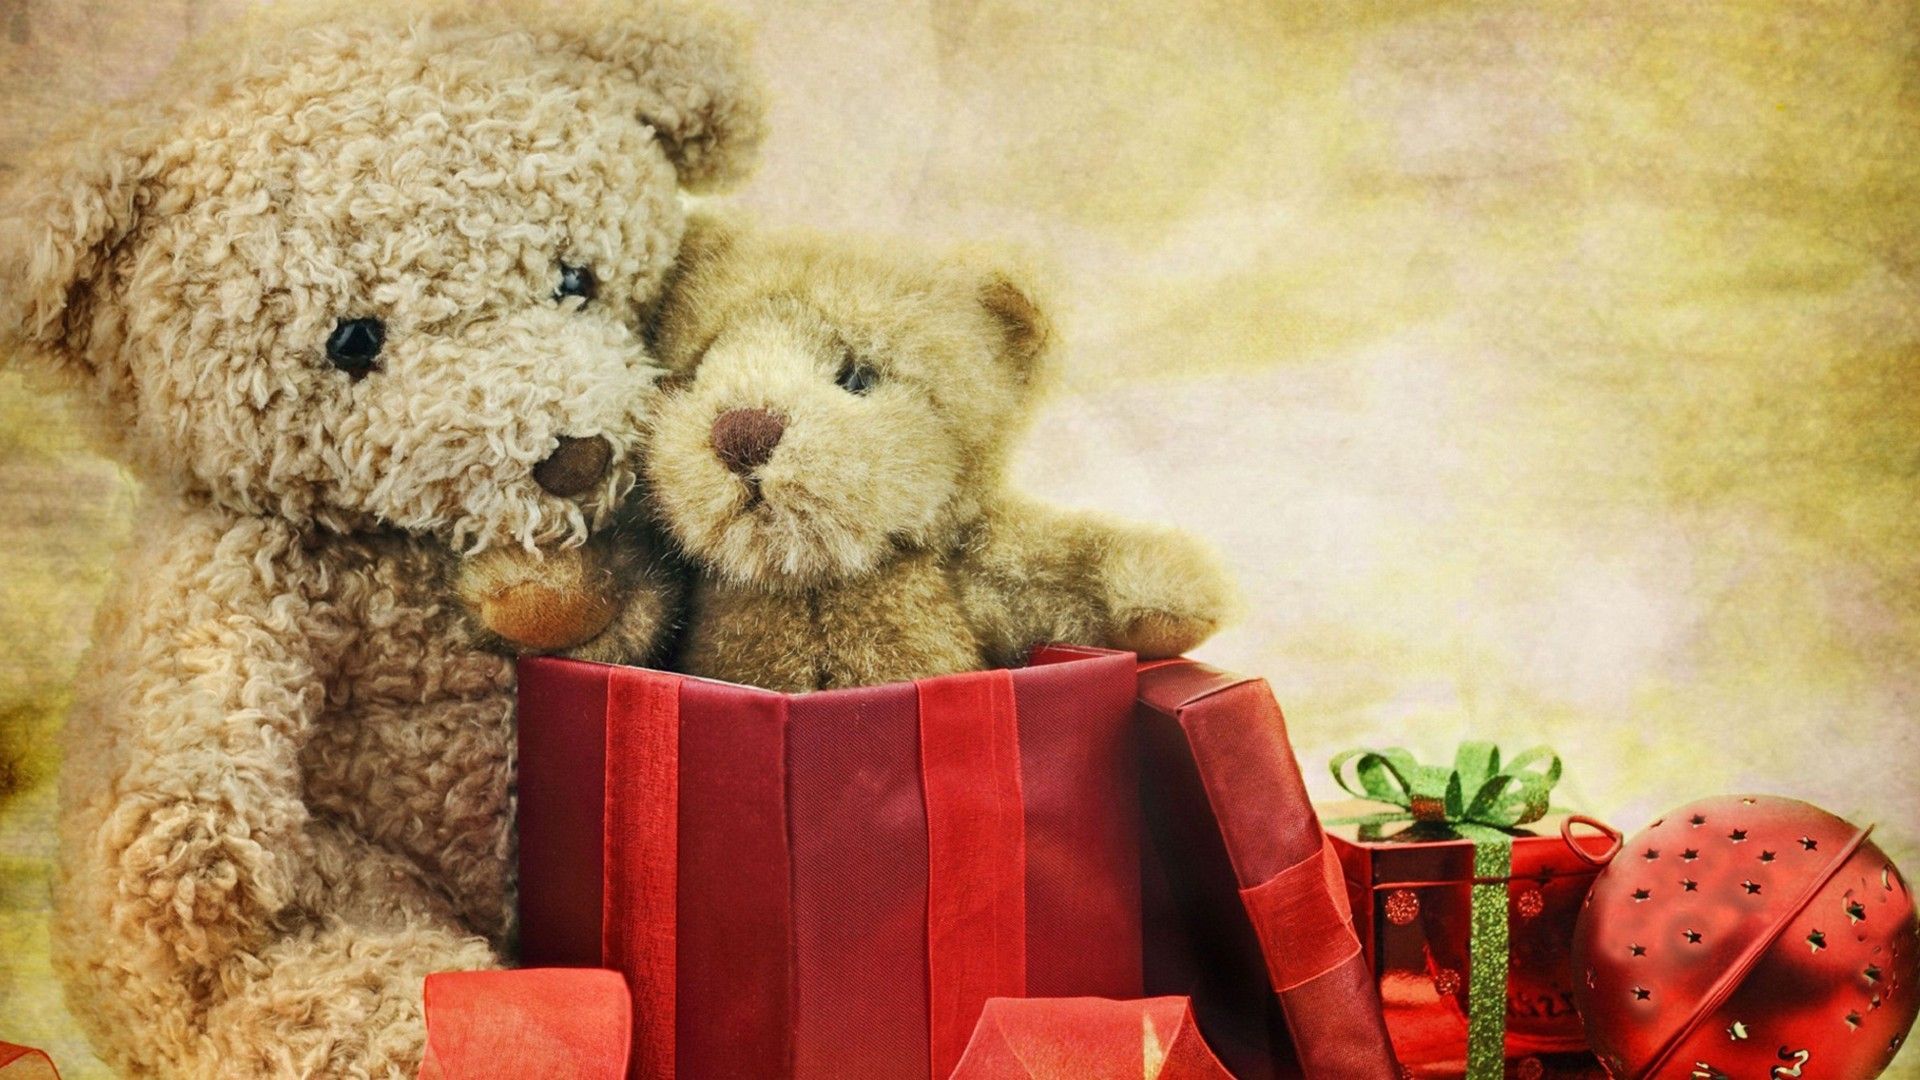 Cute Teddy Bear Wallpaper HD. Christmas teddy bear, Teddy day